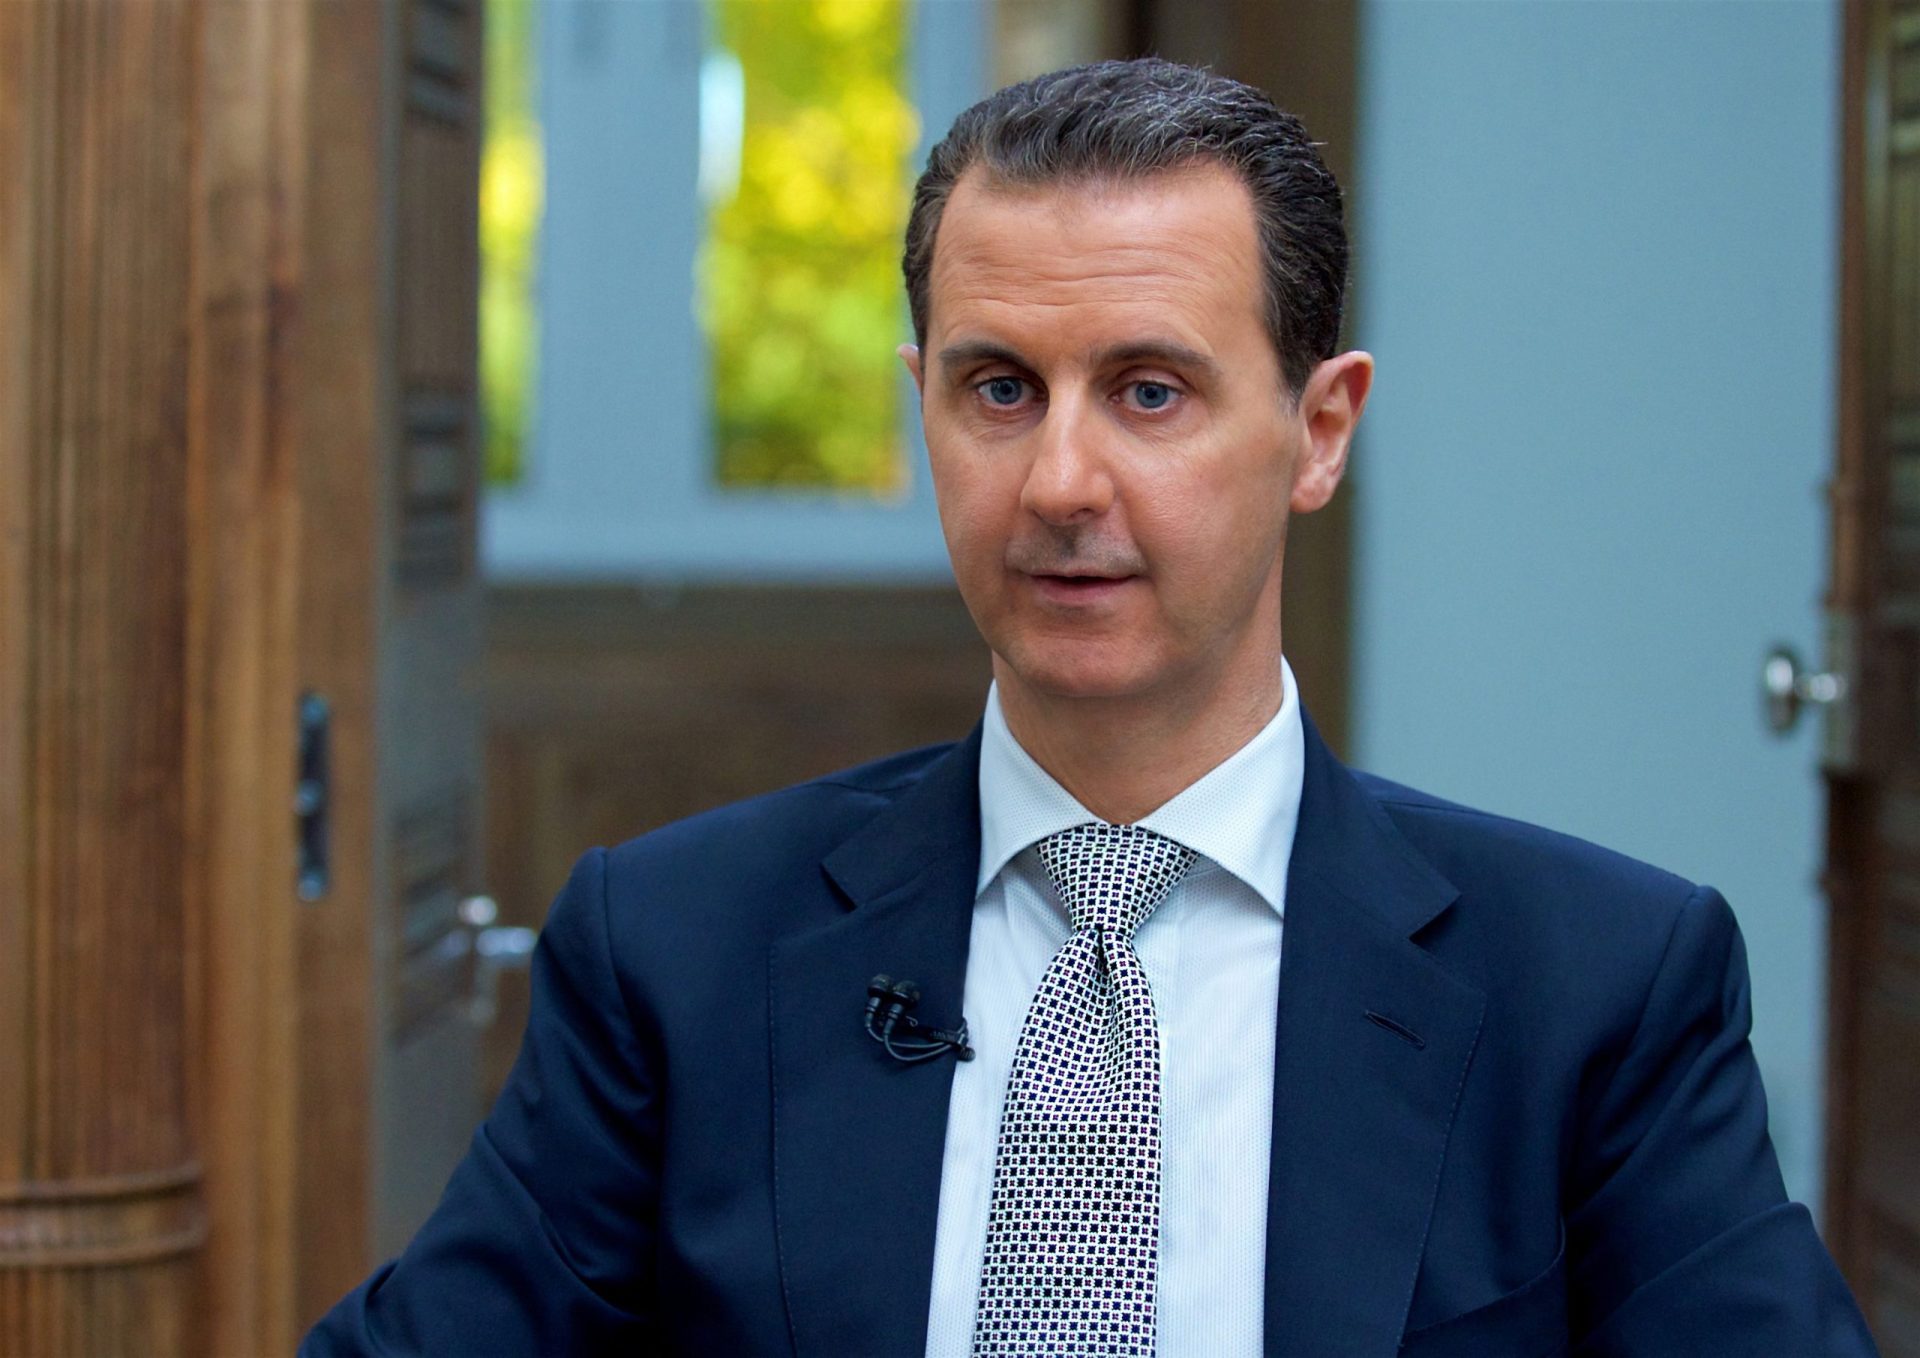 Ataque químico foi “100% inventado”, diz Assad